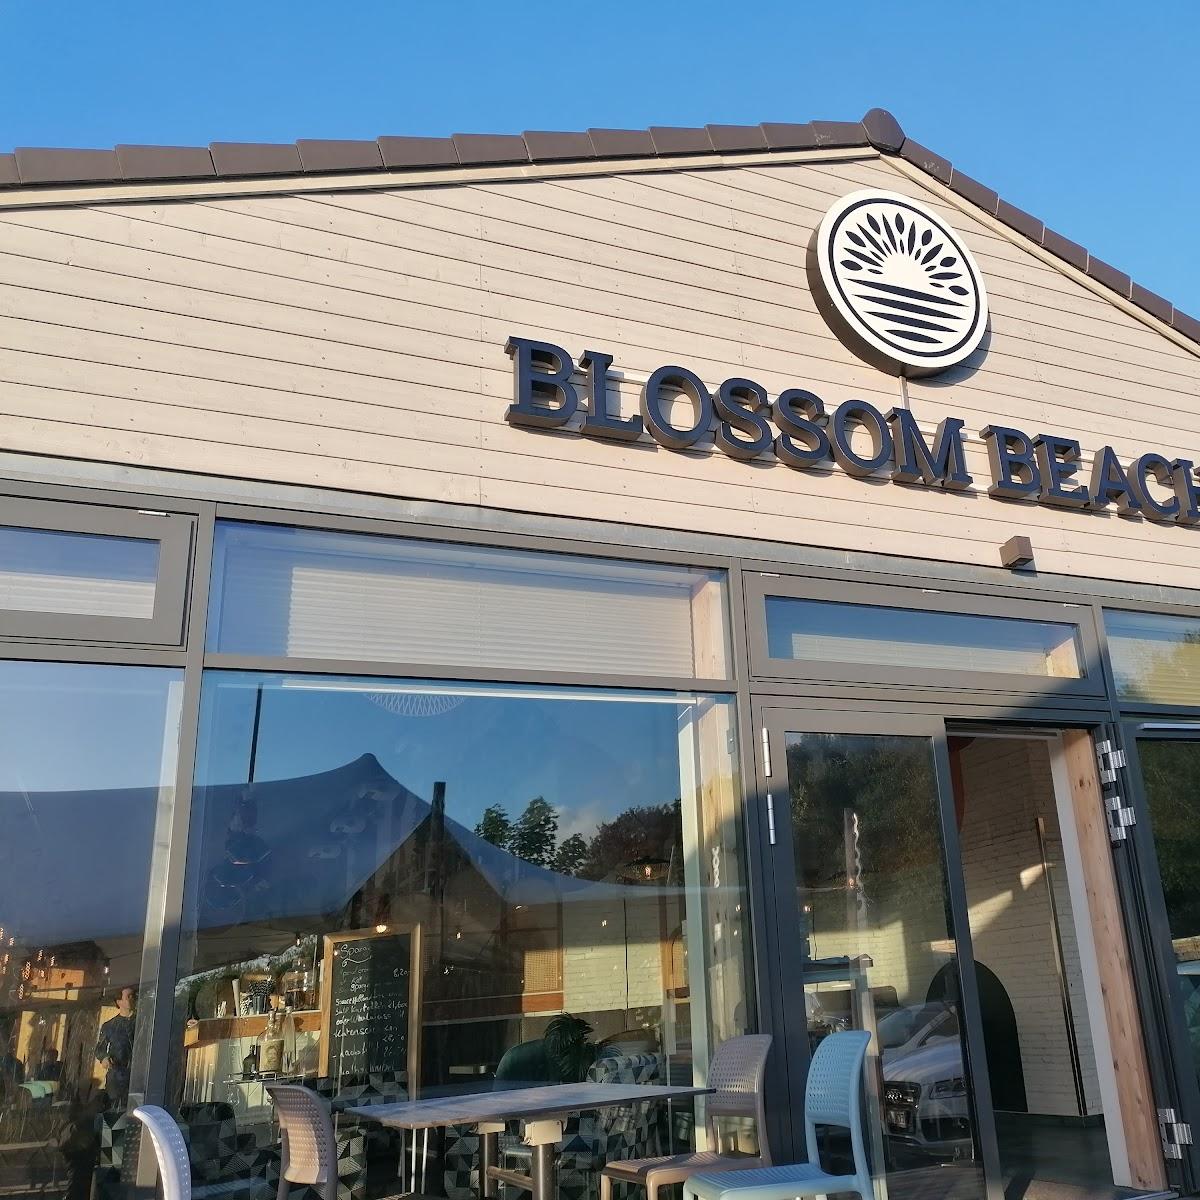 Restaurant "Blossom Beach" in Schwedeneck